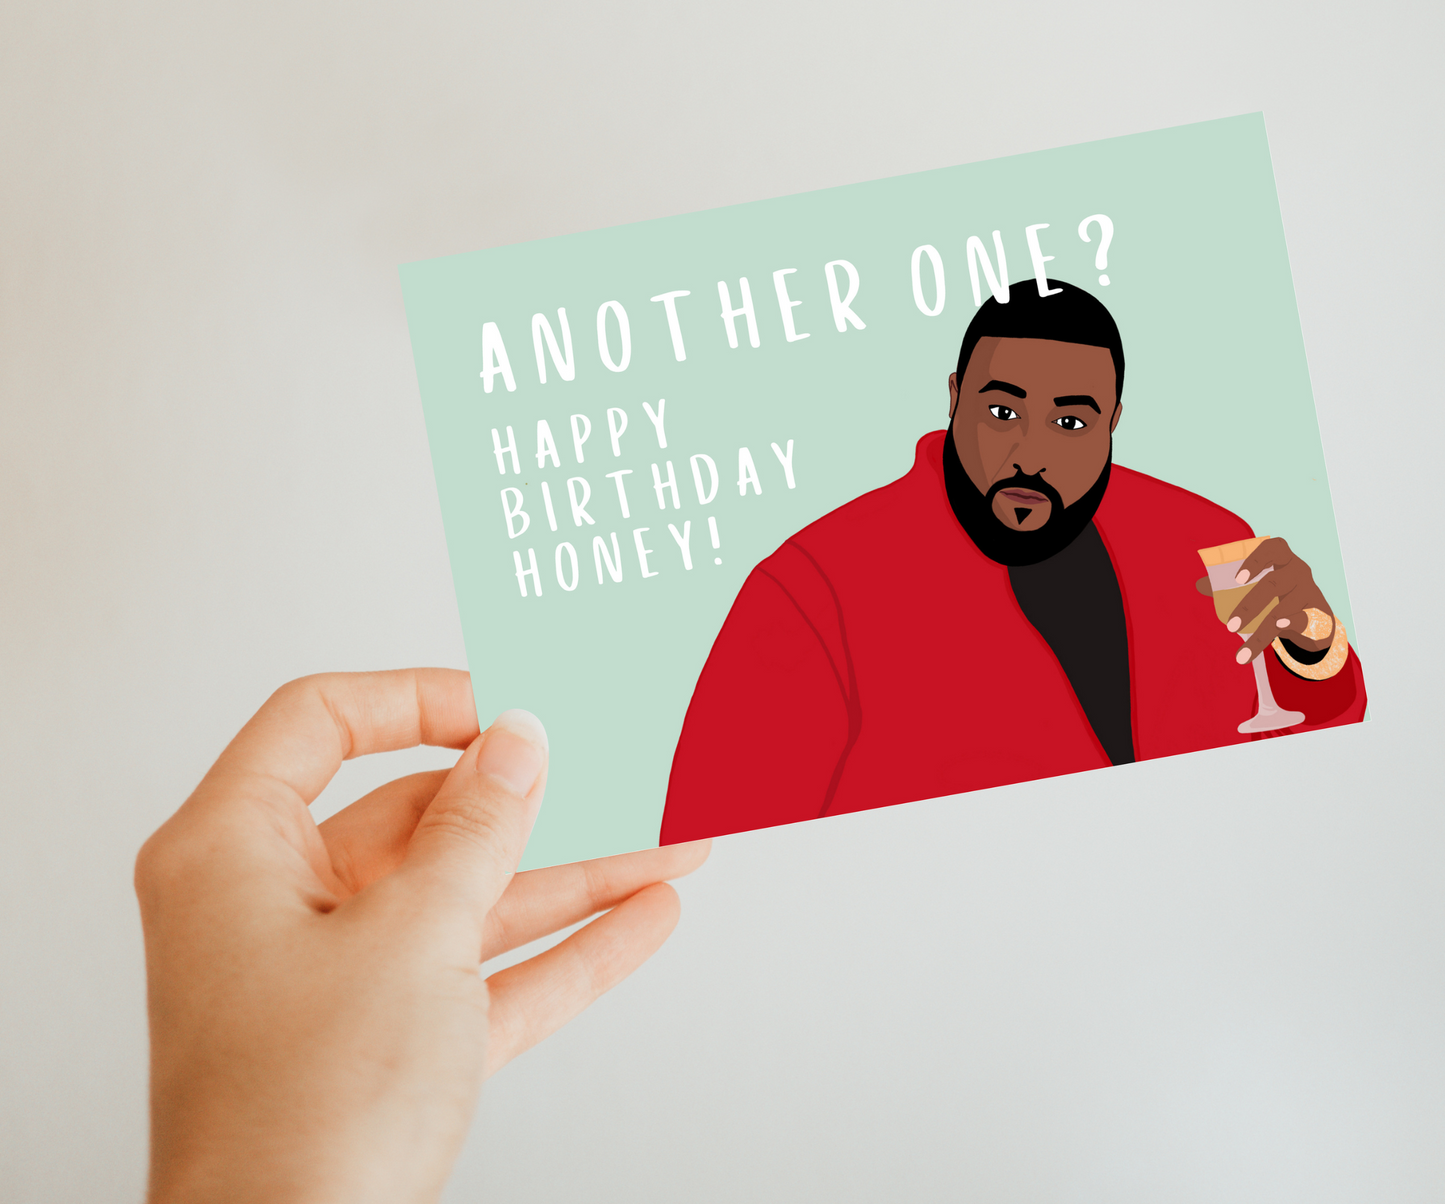 DJ Khaled Geburtstagskarte - Another One? Happy birthday, honey!